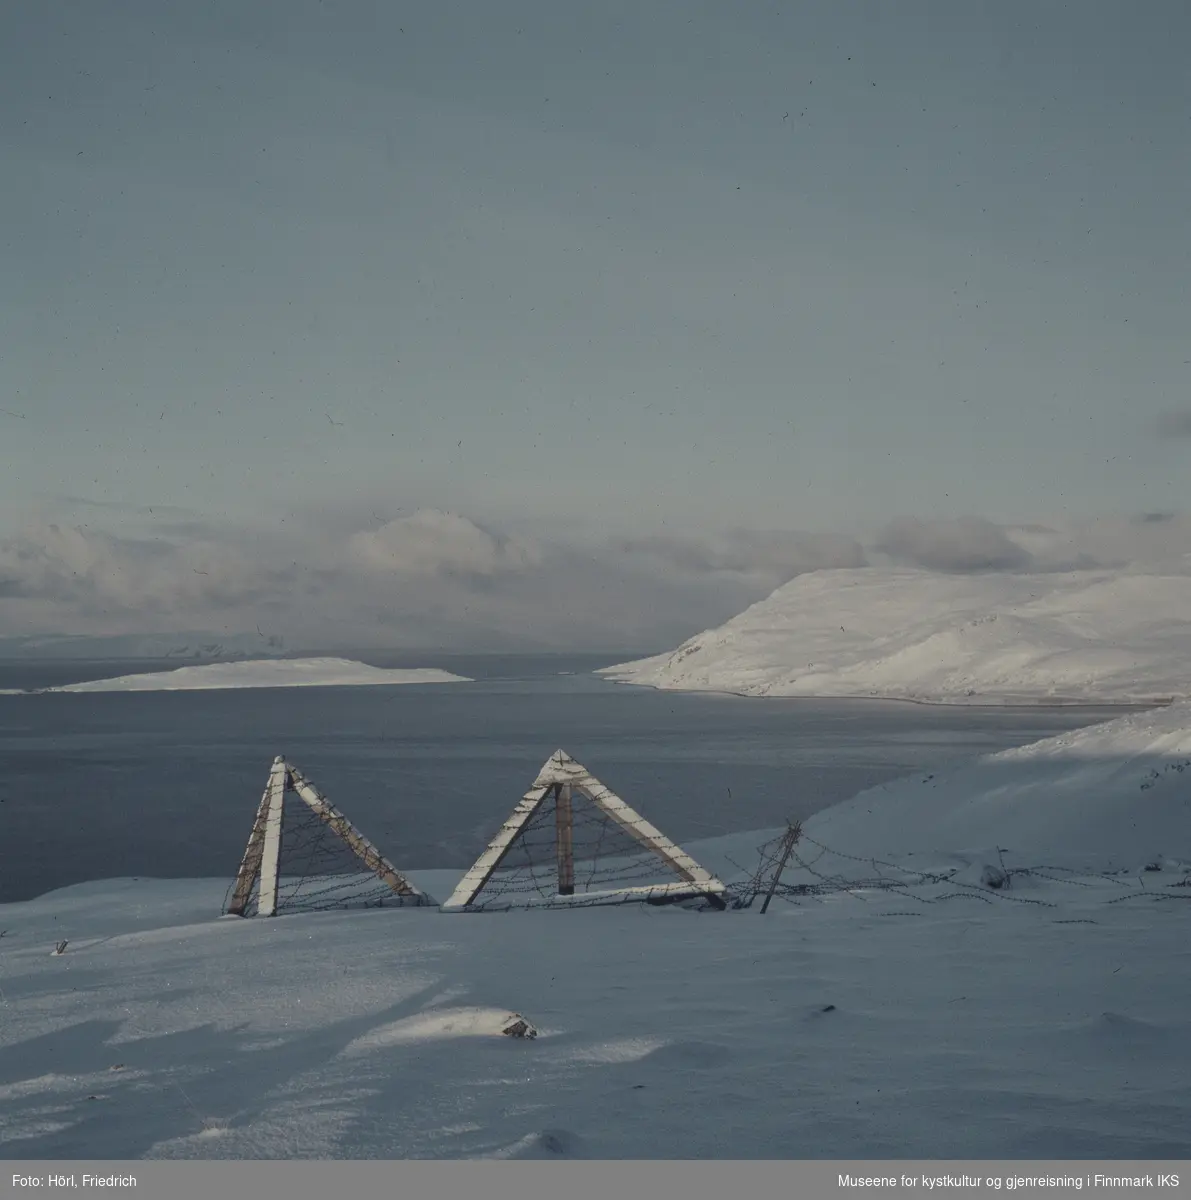 Utsikt over Sørøysundet og Melkøya i vinteren 1957/1958 fra fjellet sør for Hammerfest. I forgrunnen ser man rester etter installasjoner med piggtråd. Landskapet er dekket med snø. Bildet er muligens tatt fra Rypefjellet.